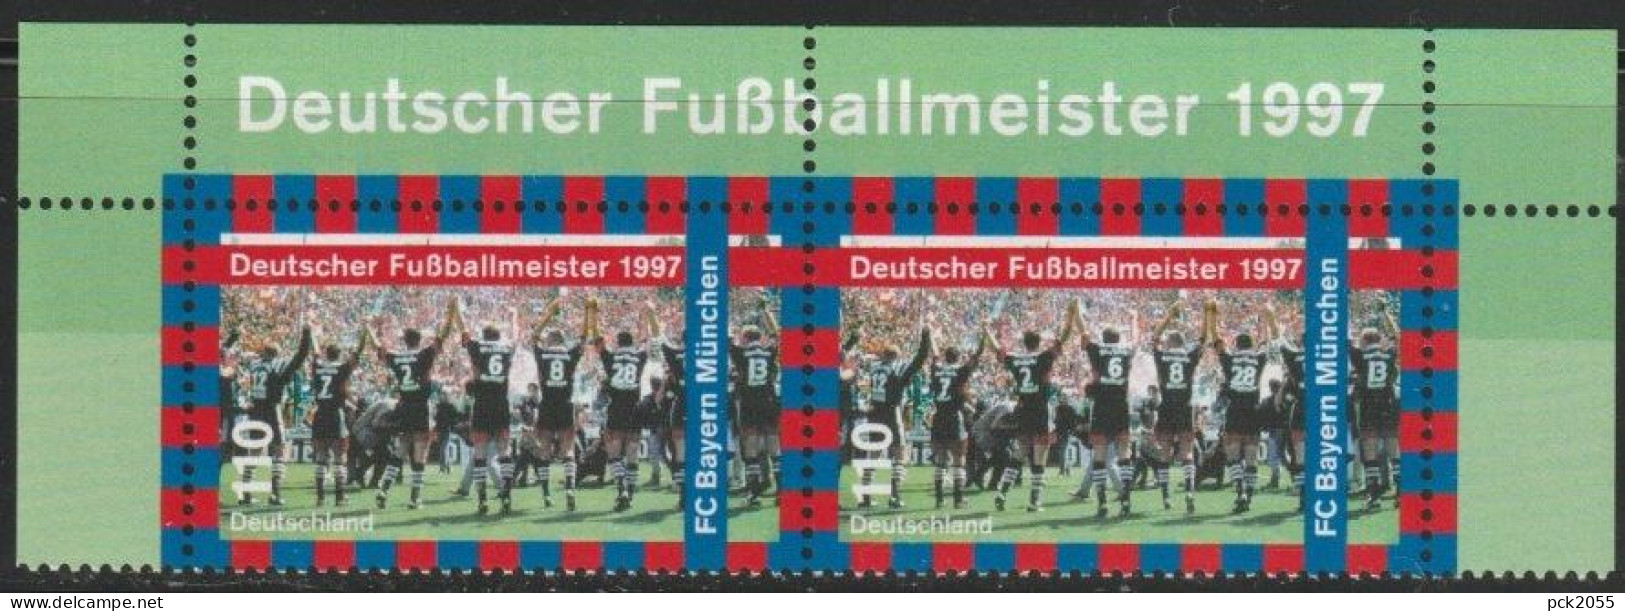 BRD 1997 MiNr.1958 Paar ** Postfrisch Deutscher Fußballmeister FC Bayern München ( A3318 )günstige Versandkosten - Ungebraucht